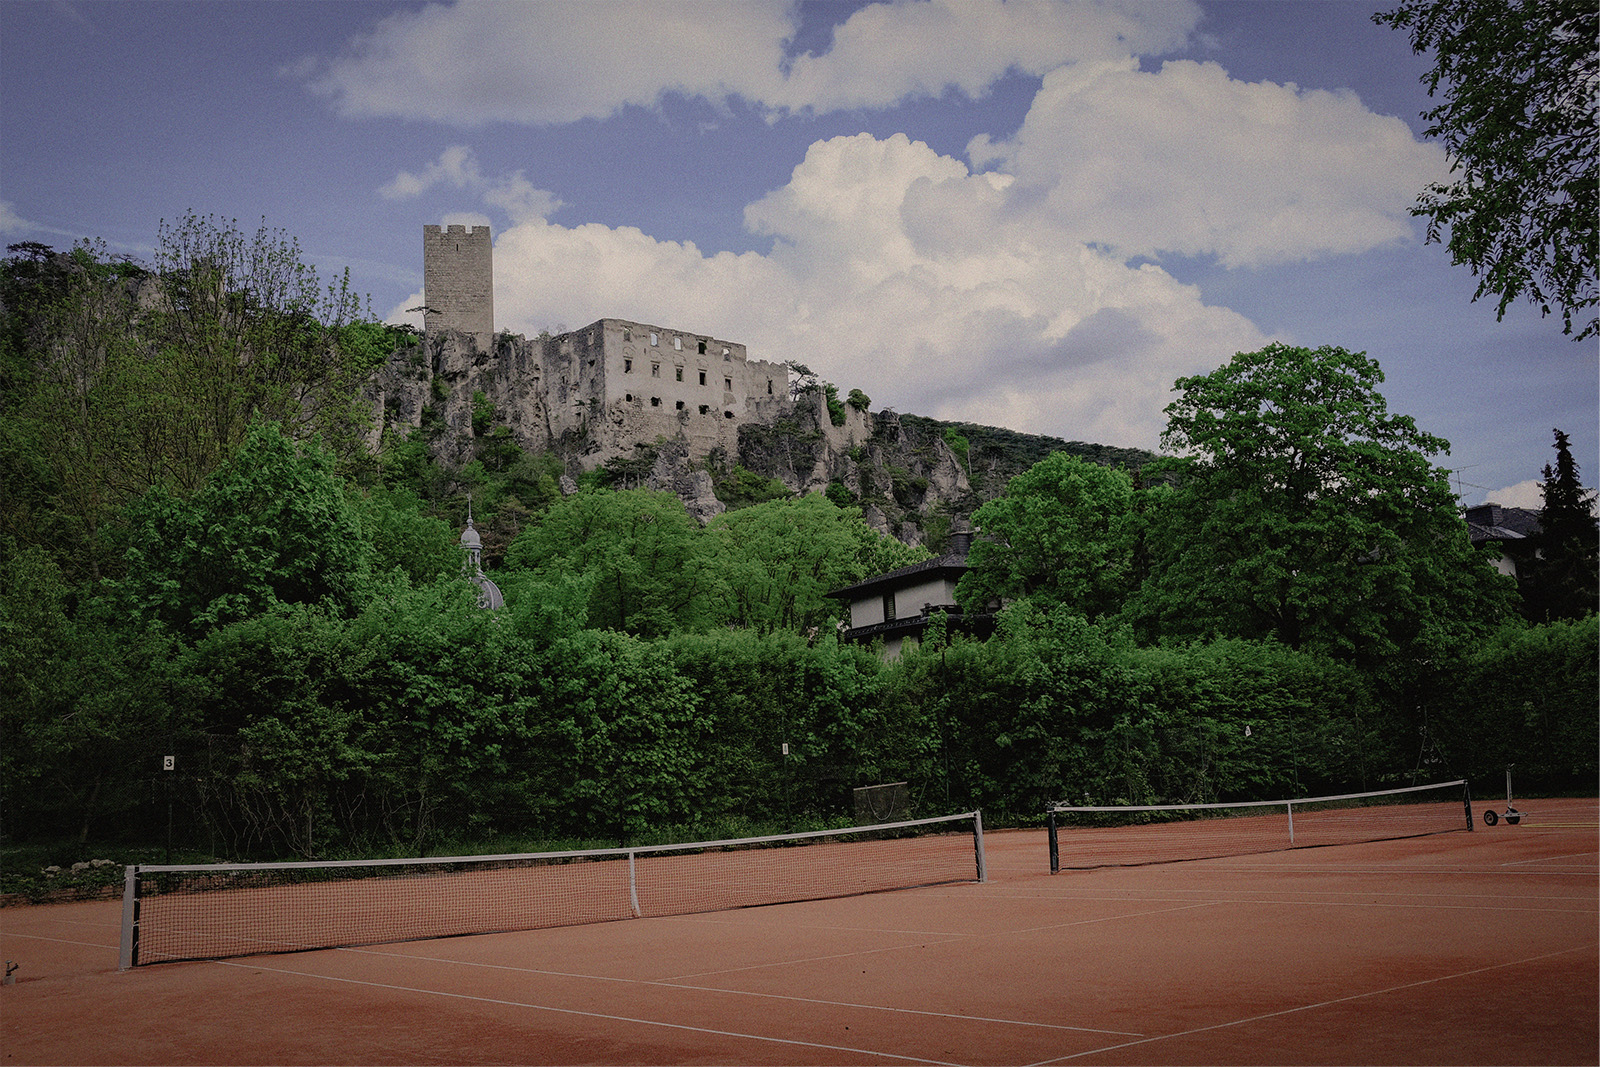 Tennisplatz vor der Ruine Rauhenstein